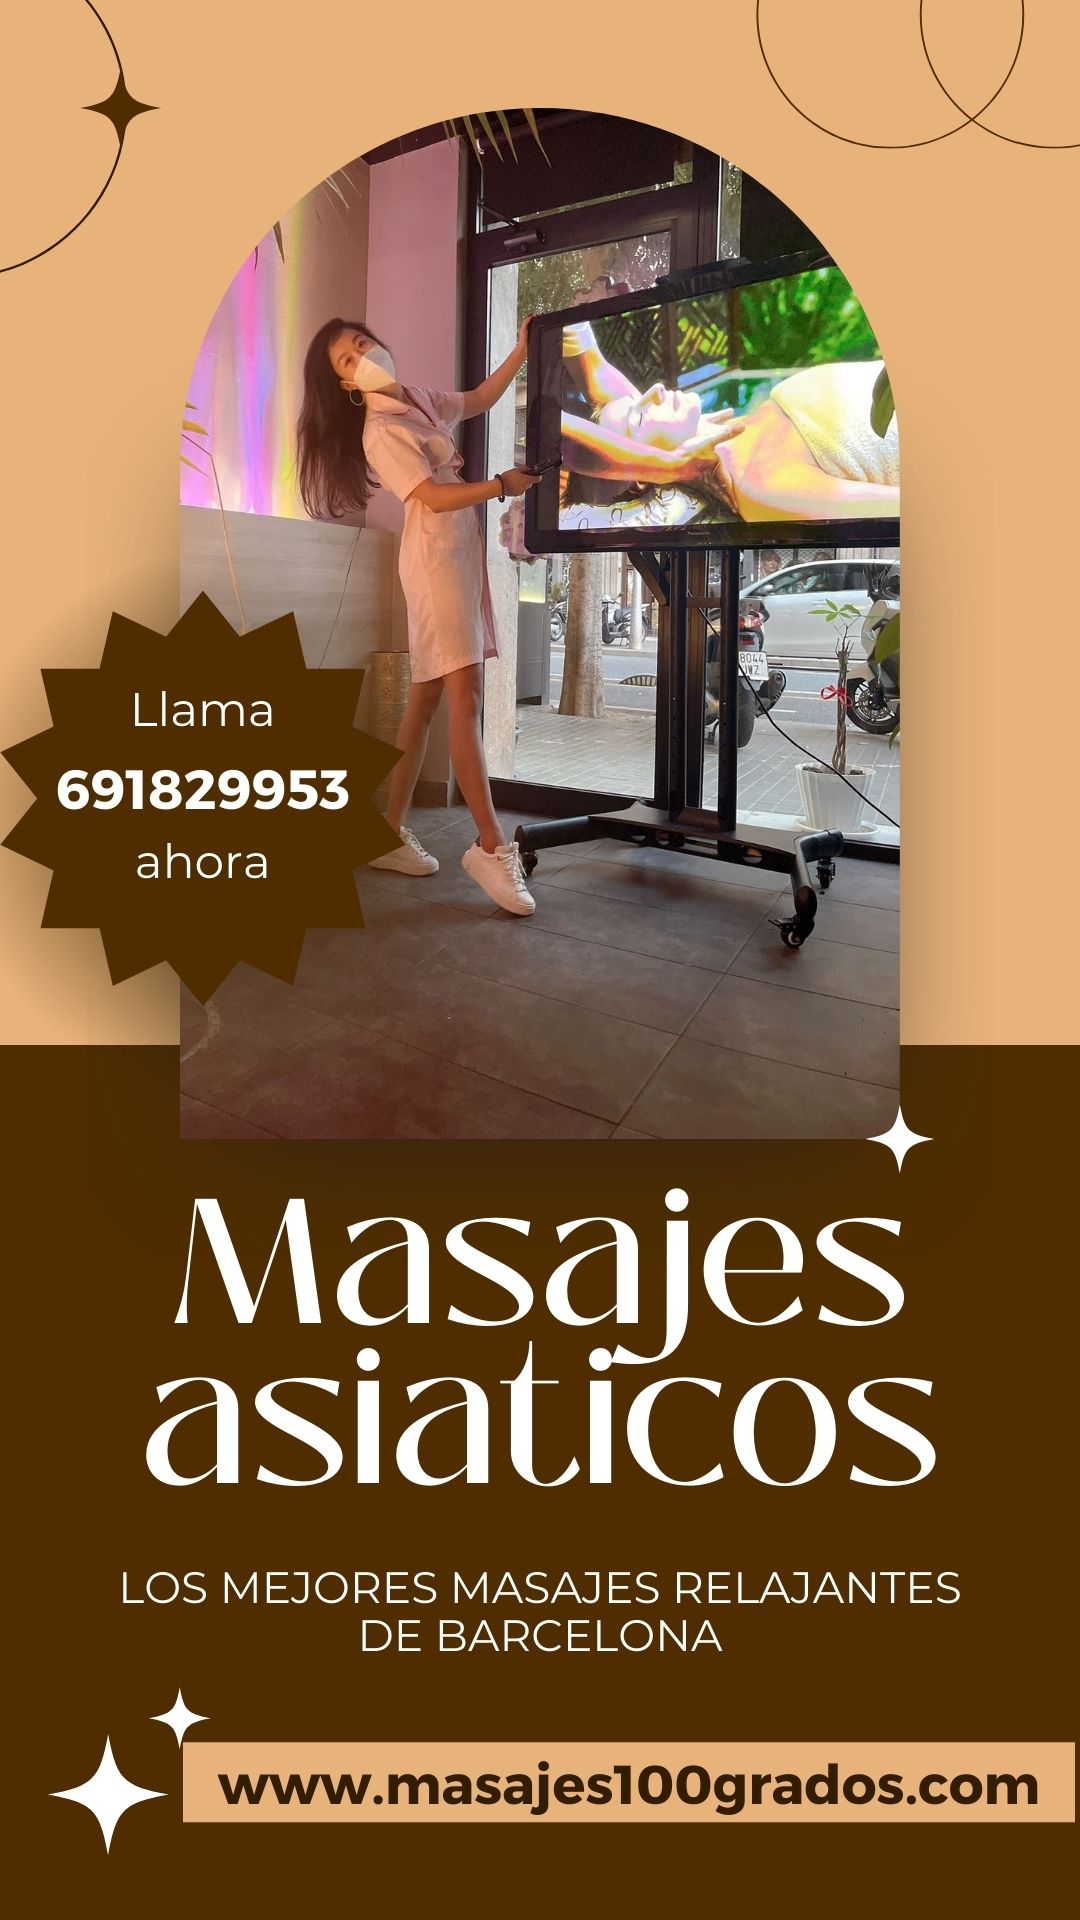 ¿has probado los masajes asiáticos en barcelona? 